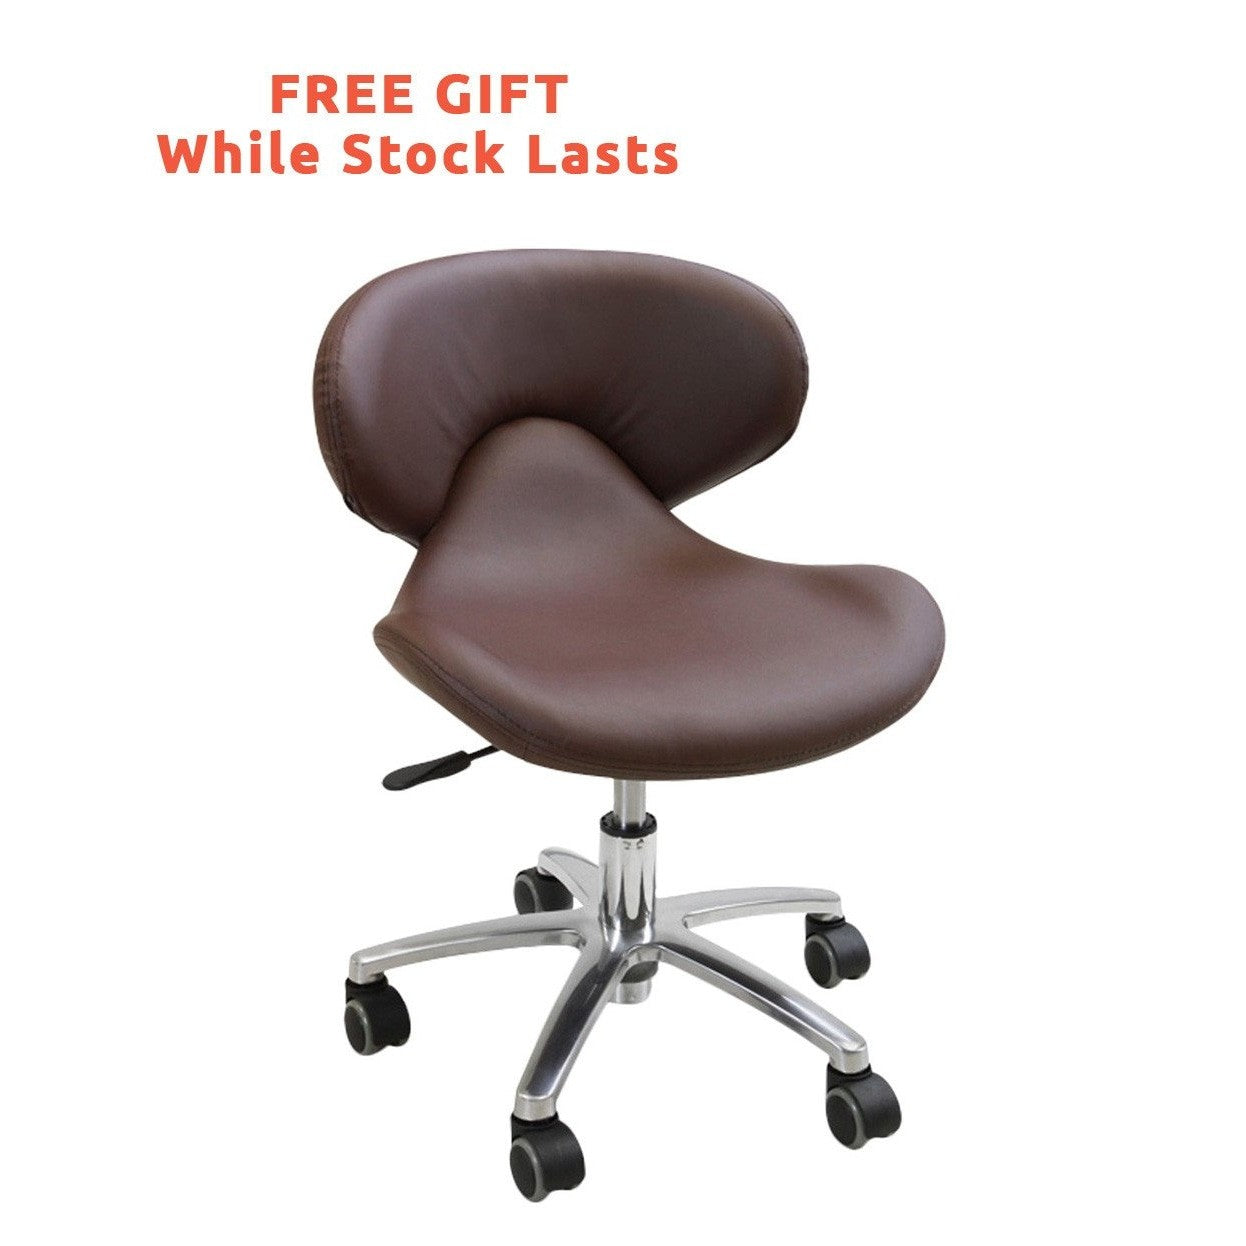 Continuum Continuum Vantage VE Pedicure Spa Chair Pedicure & Spa Chairs - ChairsThatGive